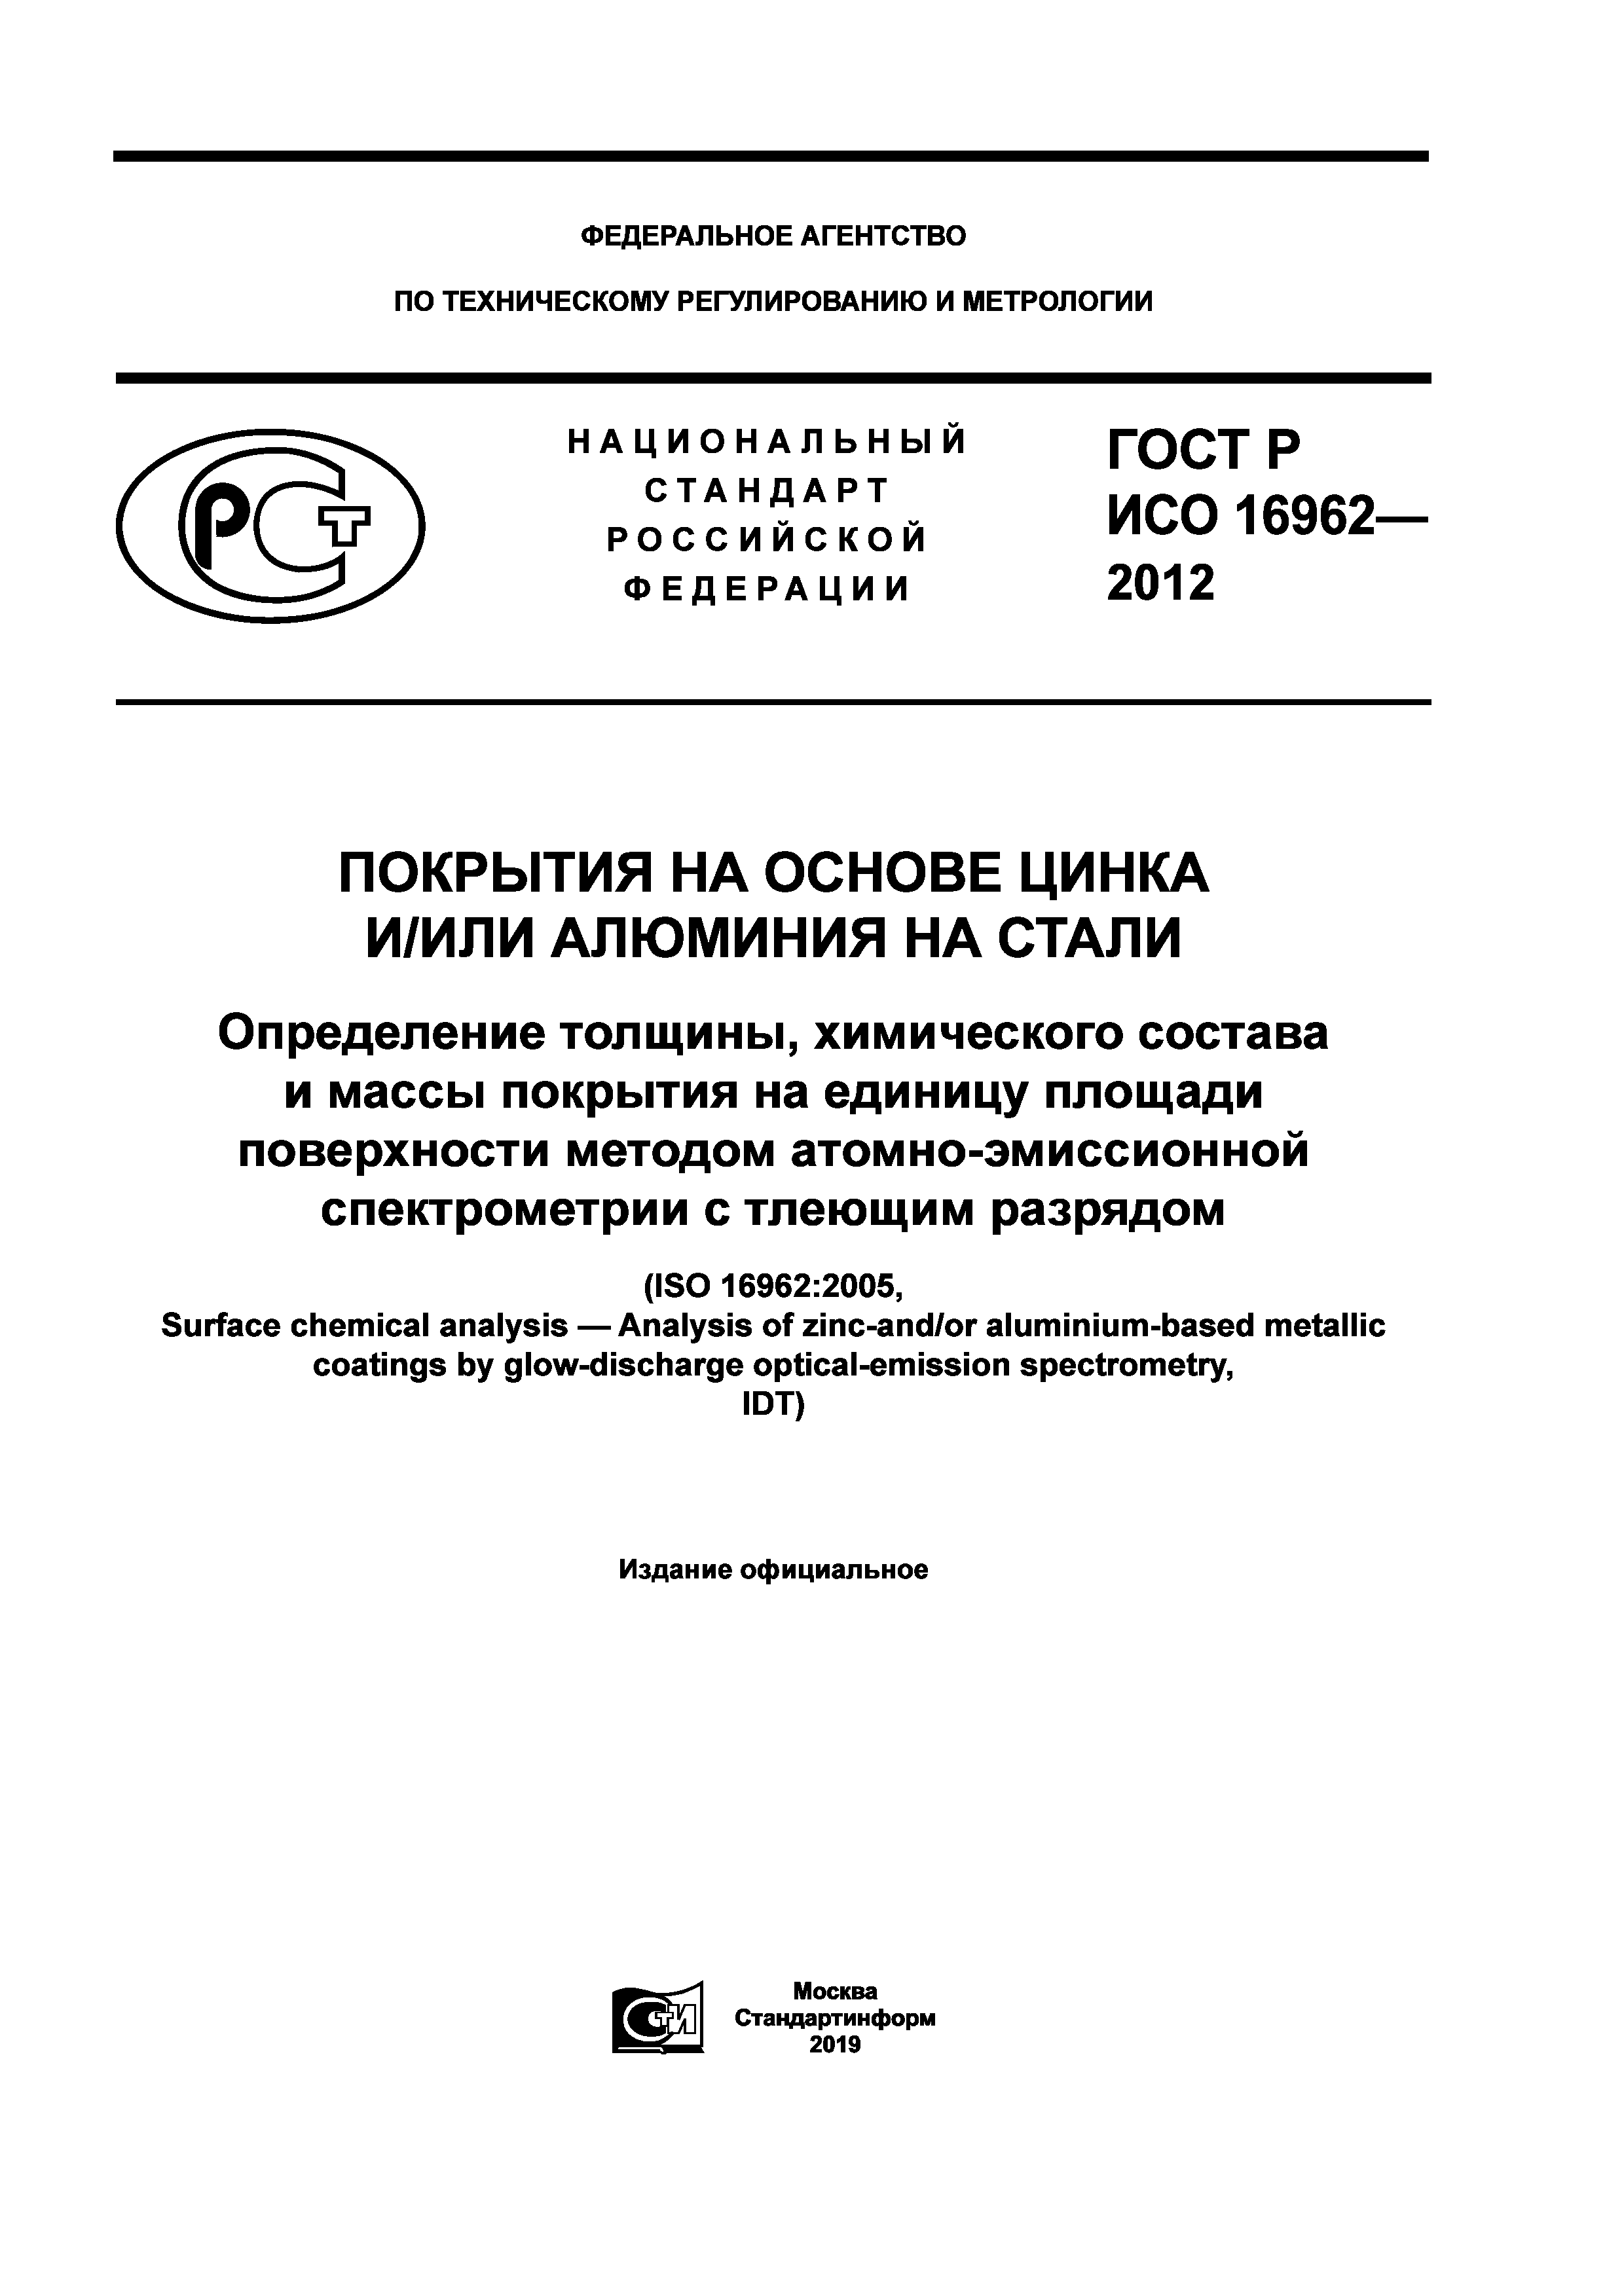 ГОСТ Р ИСО 16962-2012